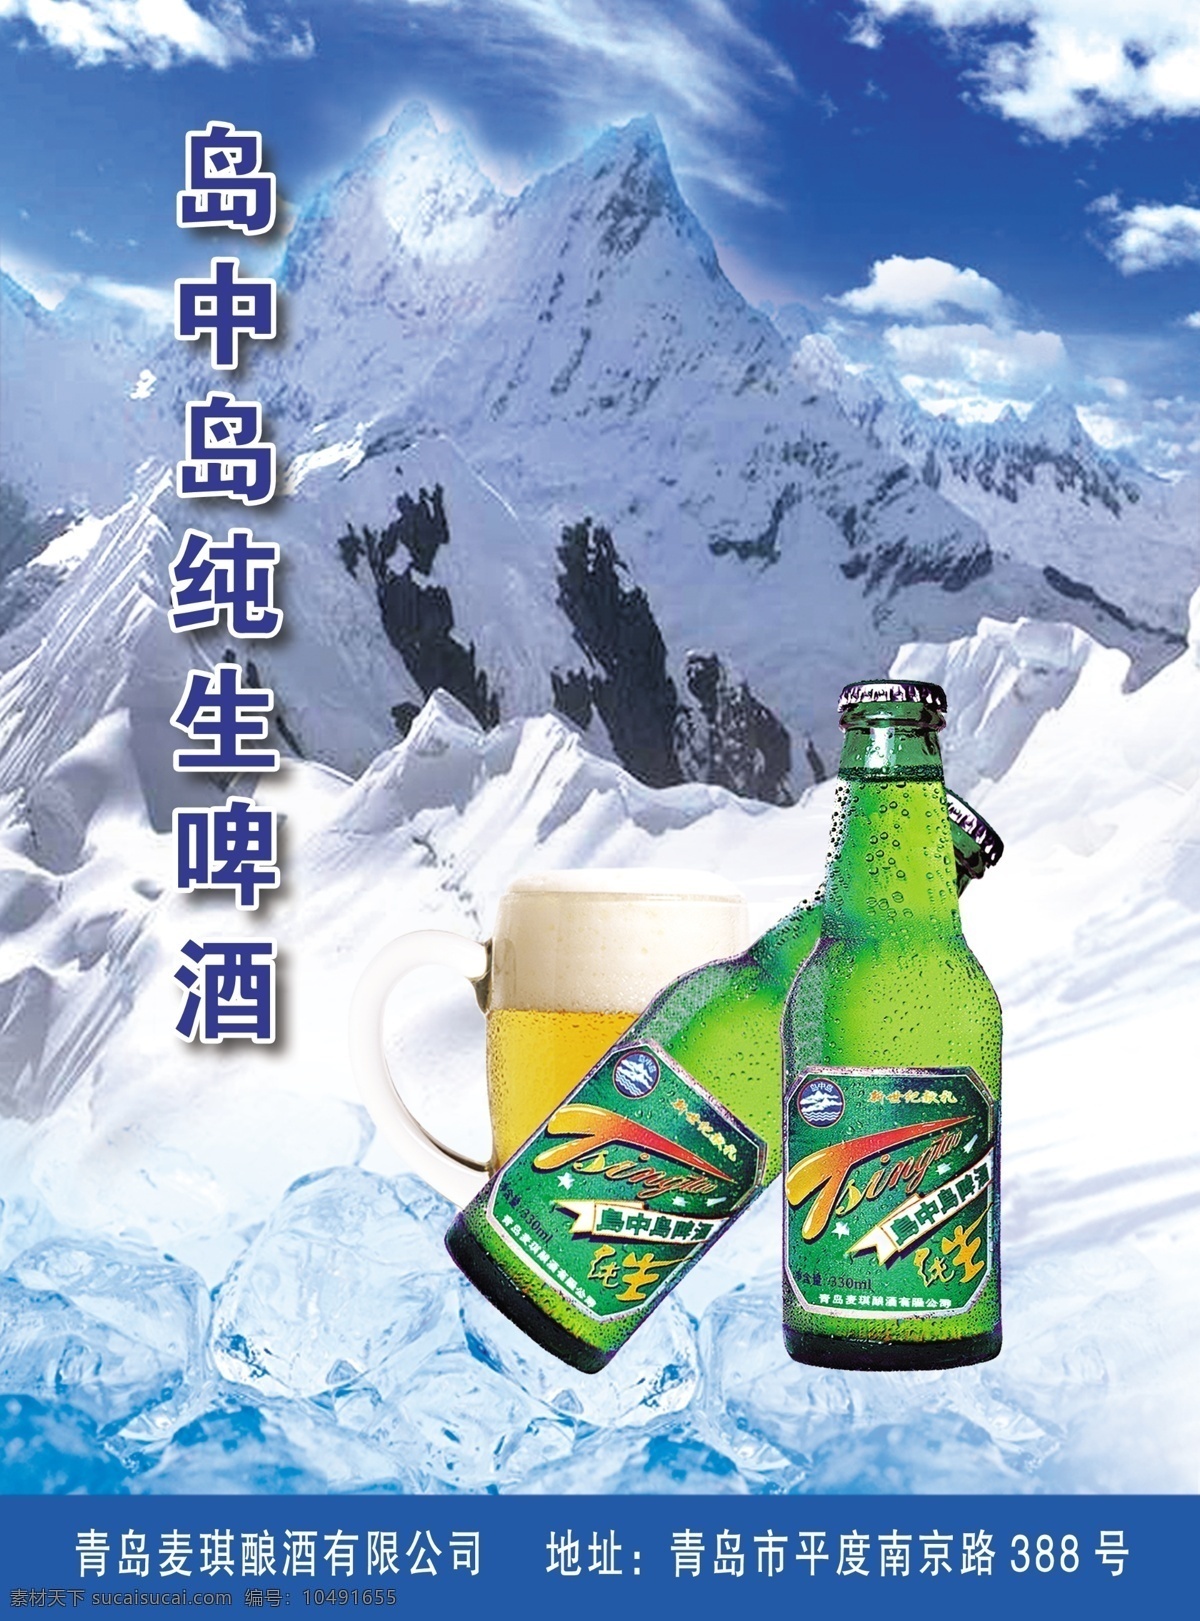 纯 生啤酒 宣传 单张 啤酒 冰块 雪山 雪地 白雪 酒杯 蓝天 白云 dm宣传单 广告设计模板 源文件